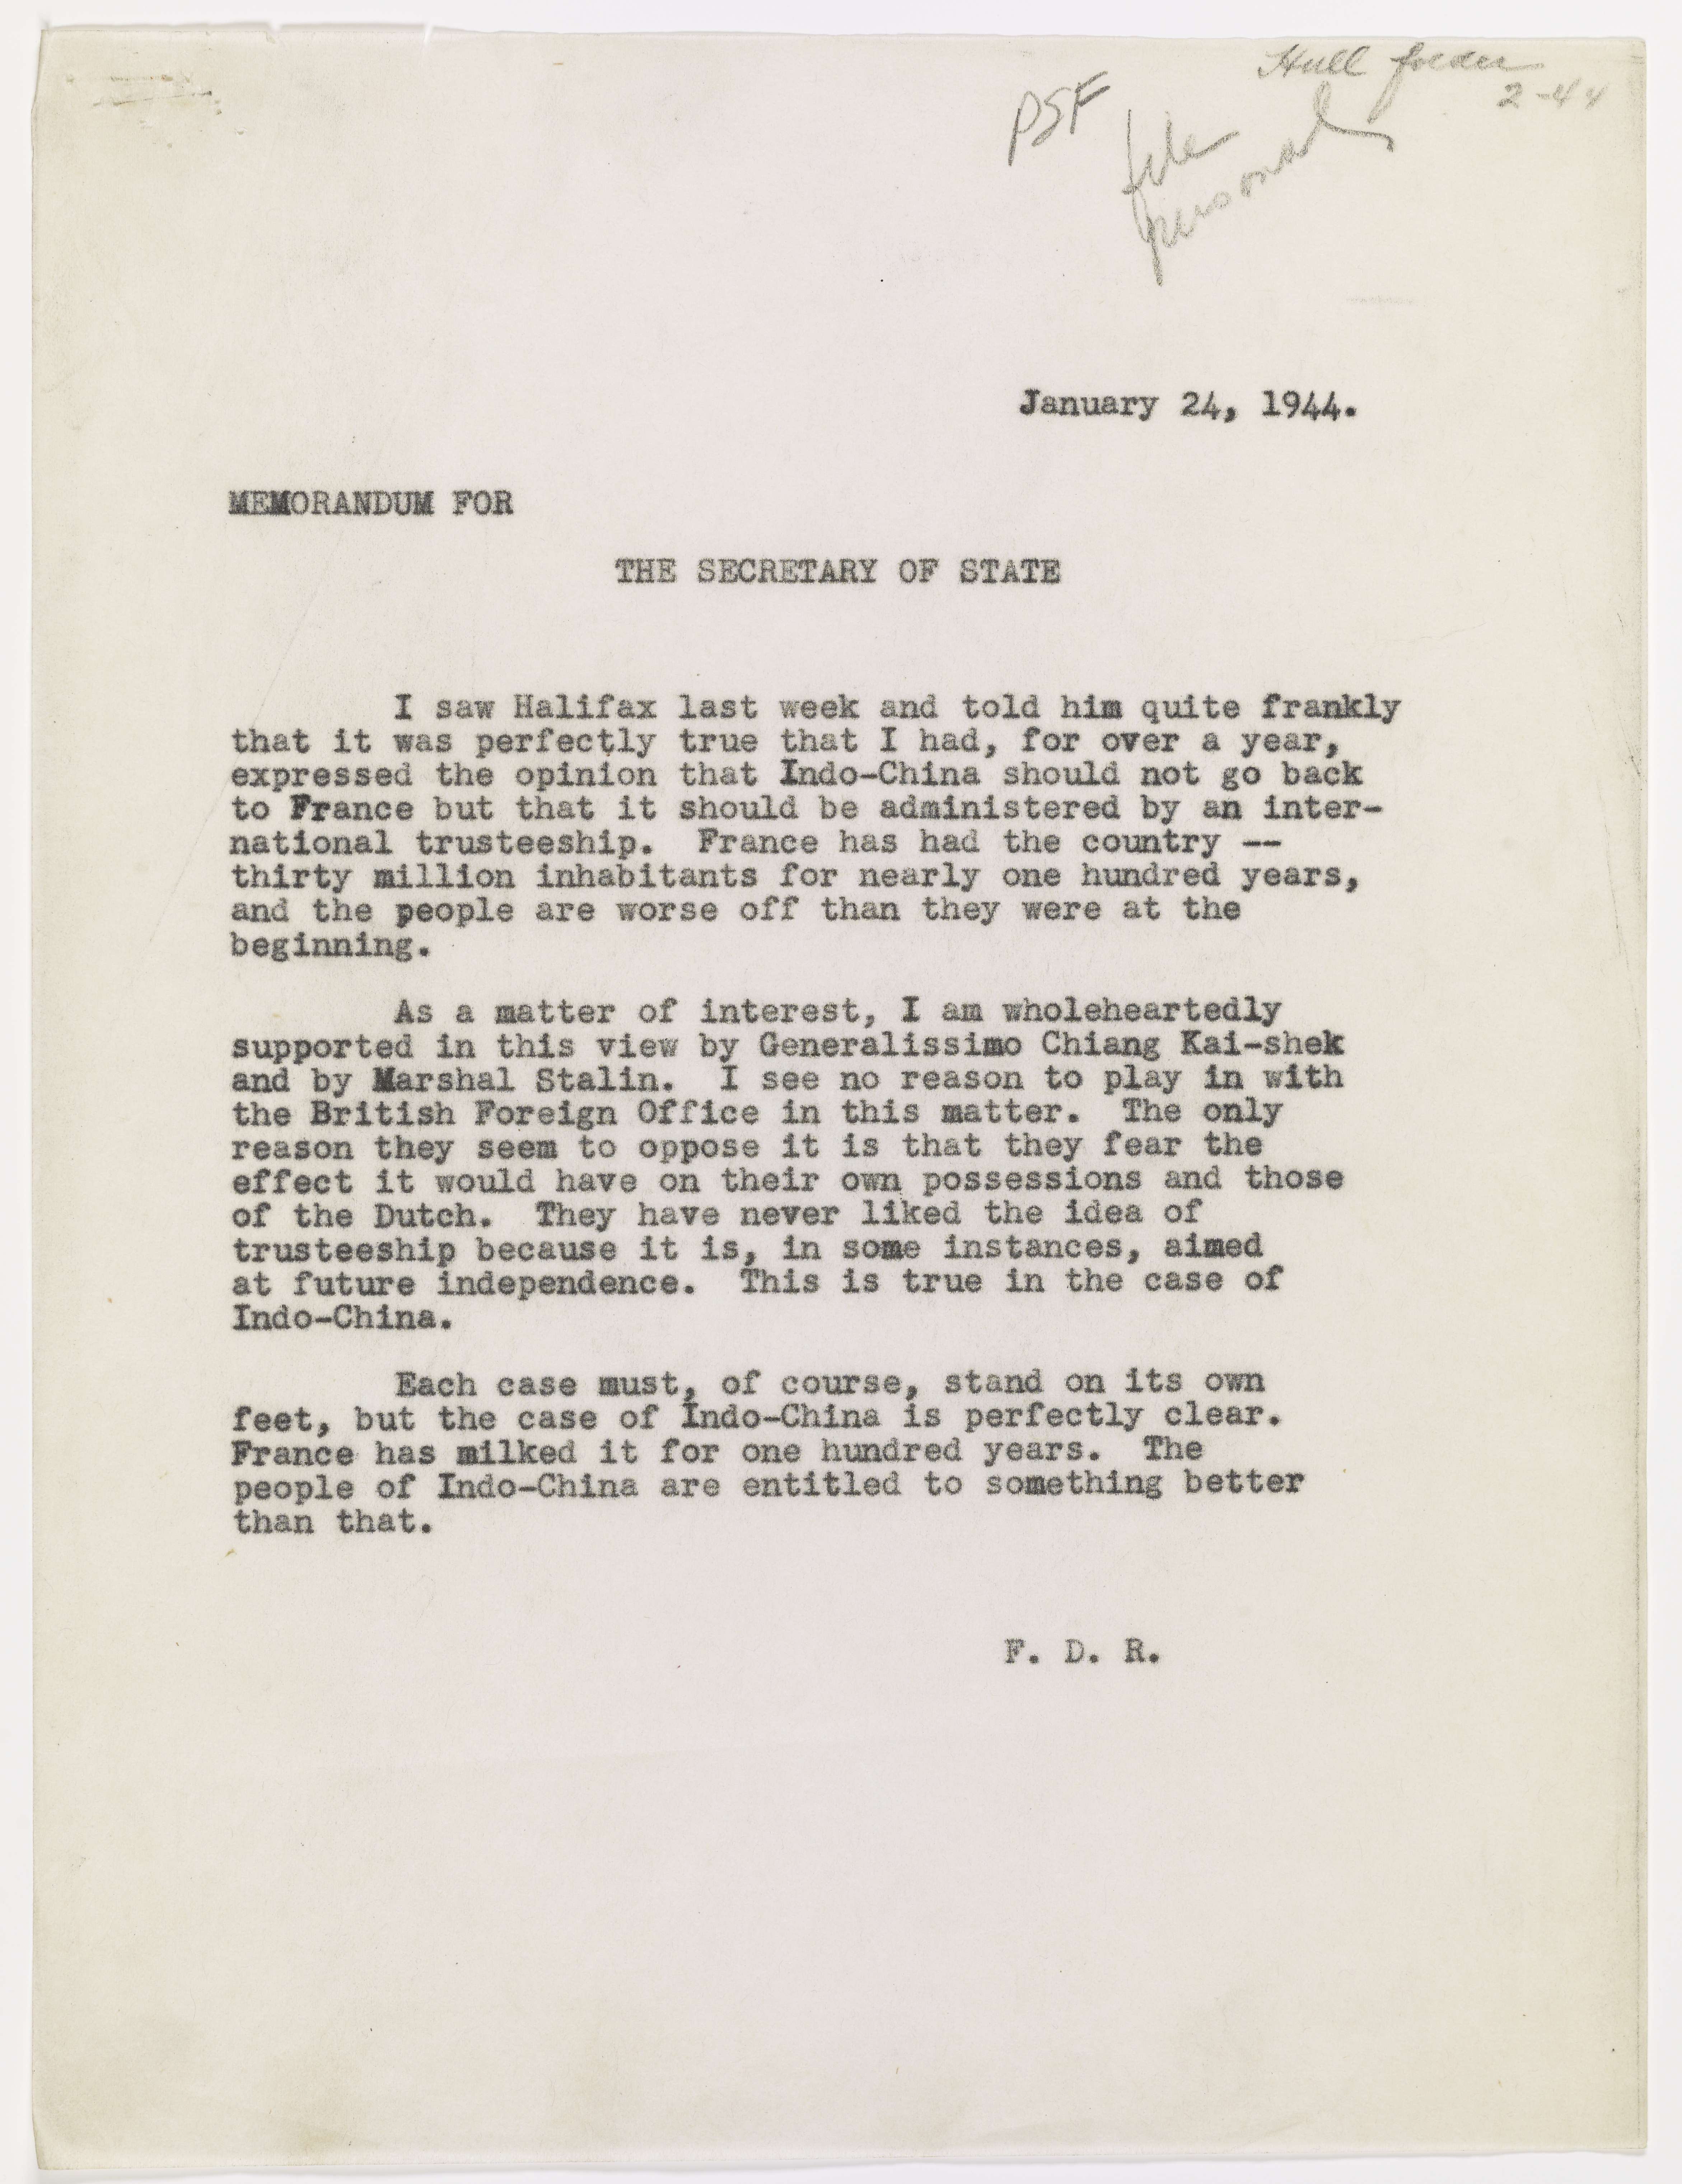 Memorandum from President Roosevelt to Secretary of State Cordell Hull